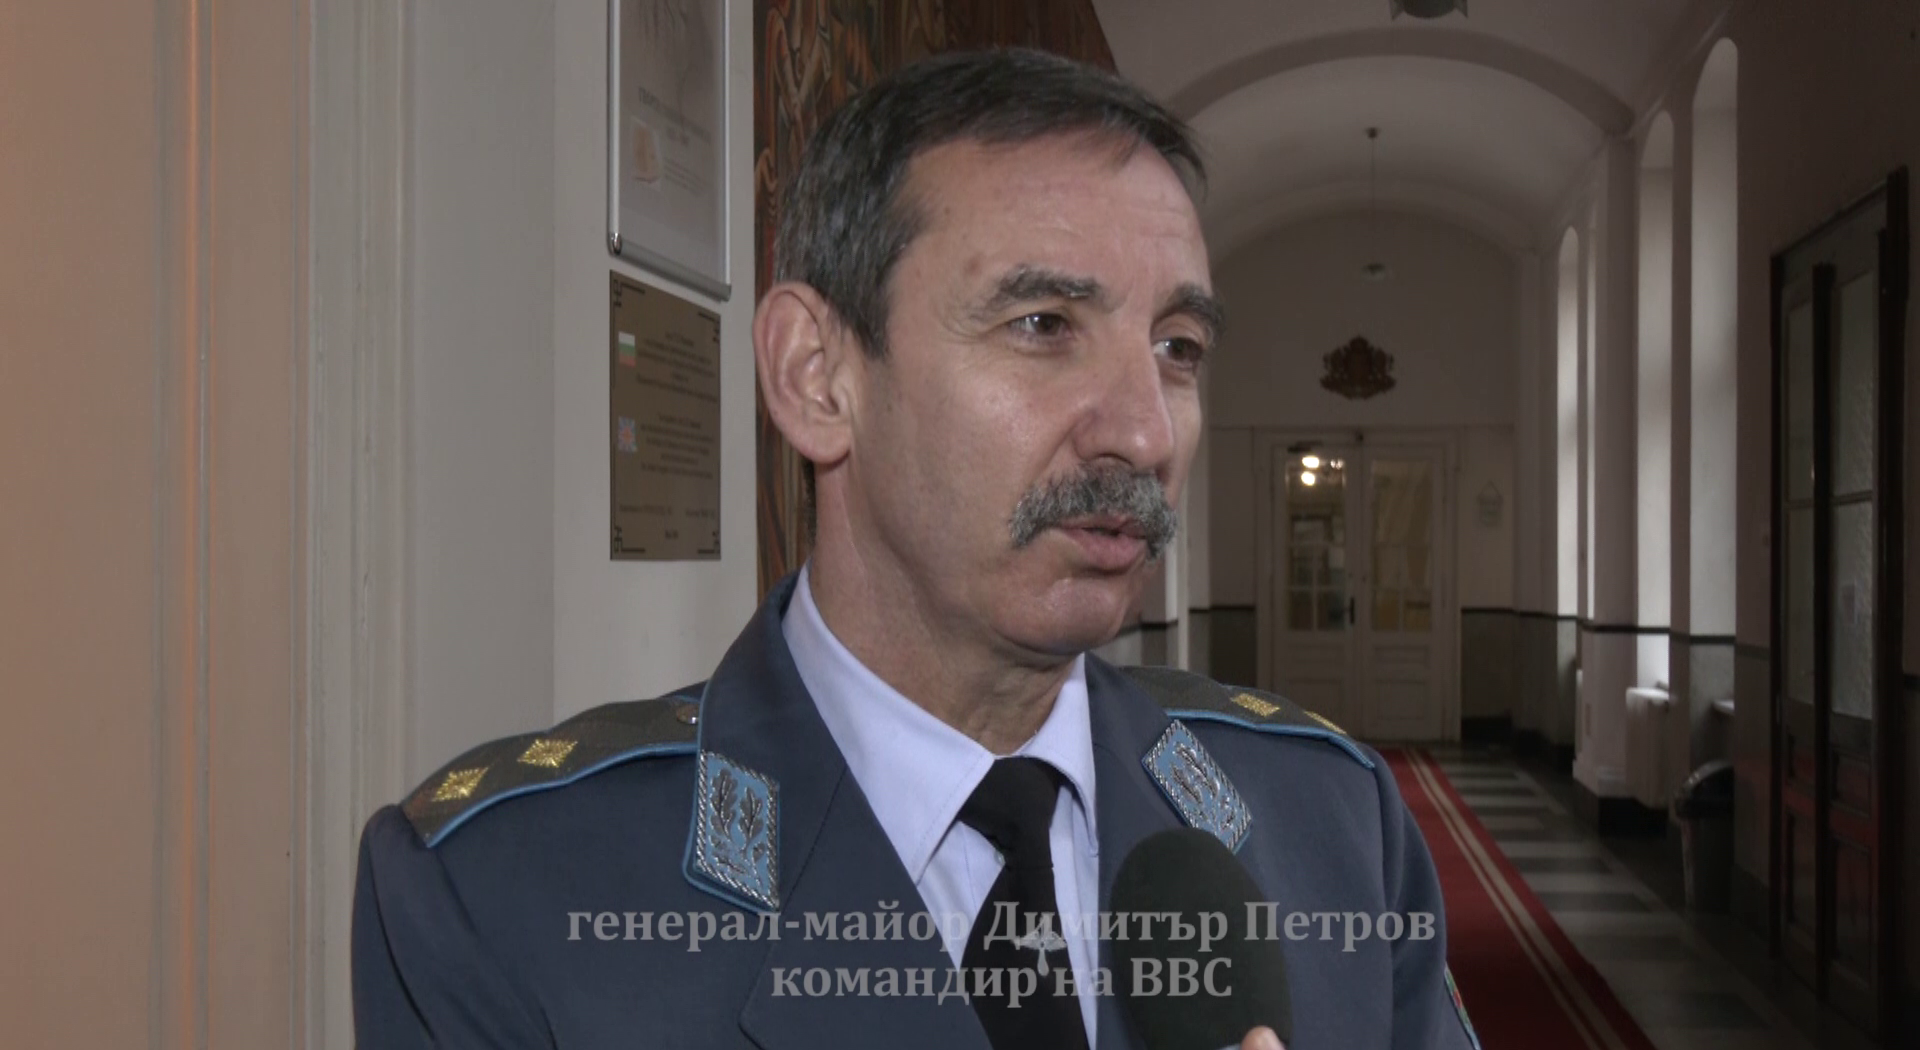 Помним своите герои – интервю с командира на ВВС генерал-майор Димитър Петров